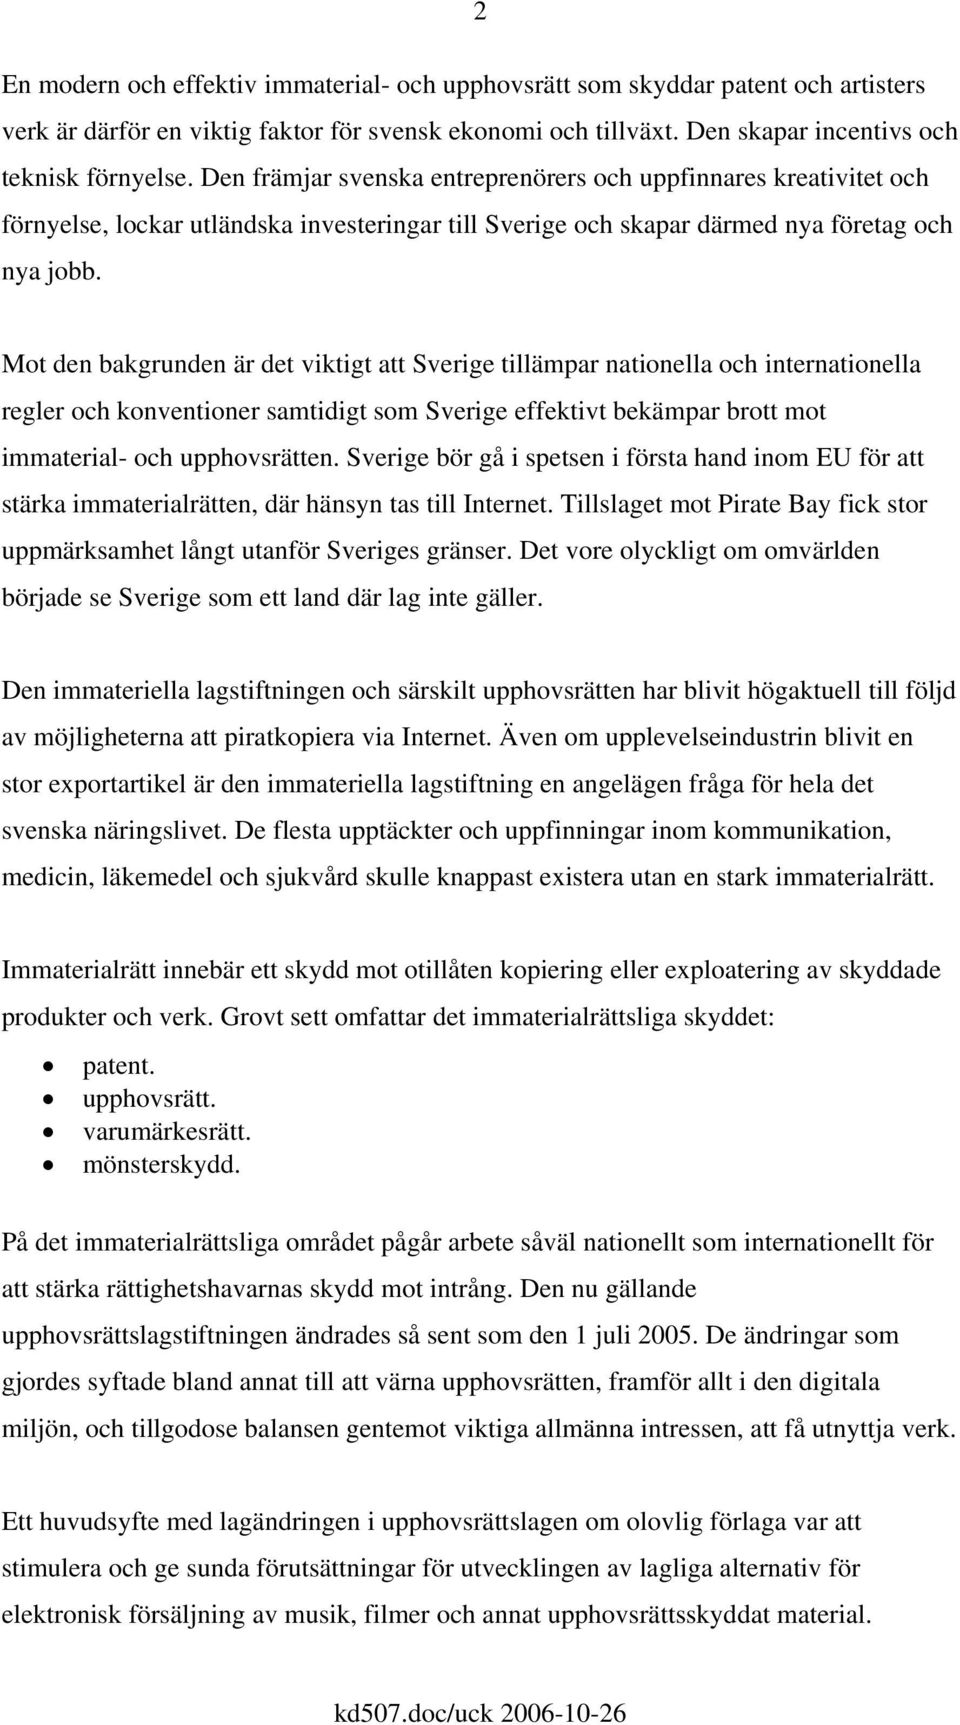 Mot den bakgrunden är det viktigt att Sverige tillämpar nationella och internationella regler och konventioner samtidigt som Sverige effektivt bekämpar brott mot immaterial- och upphovsrätten.